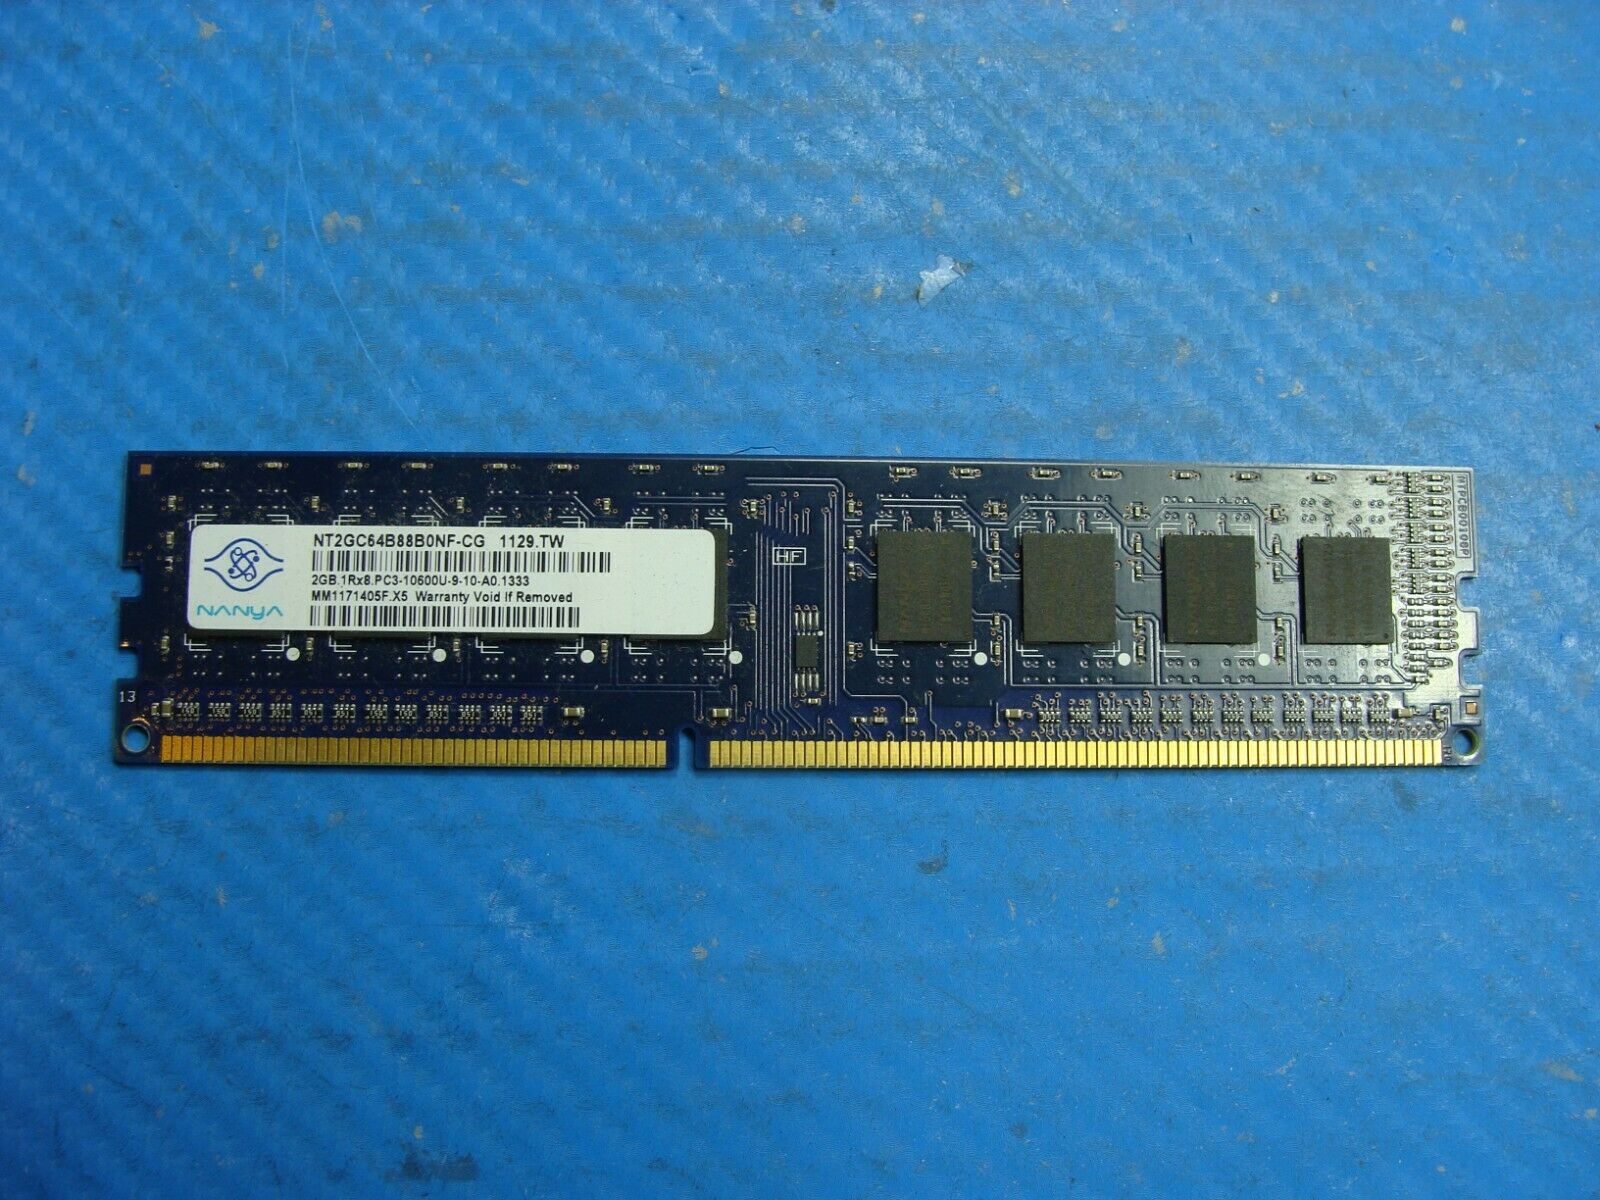 Dell XPS 8300 Genuine Nunyl SO-DIMM RAM Memory 2GB PC3-10600U NT2GC64B88B0NF-CG Dell